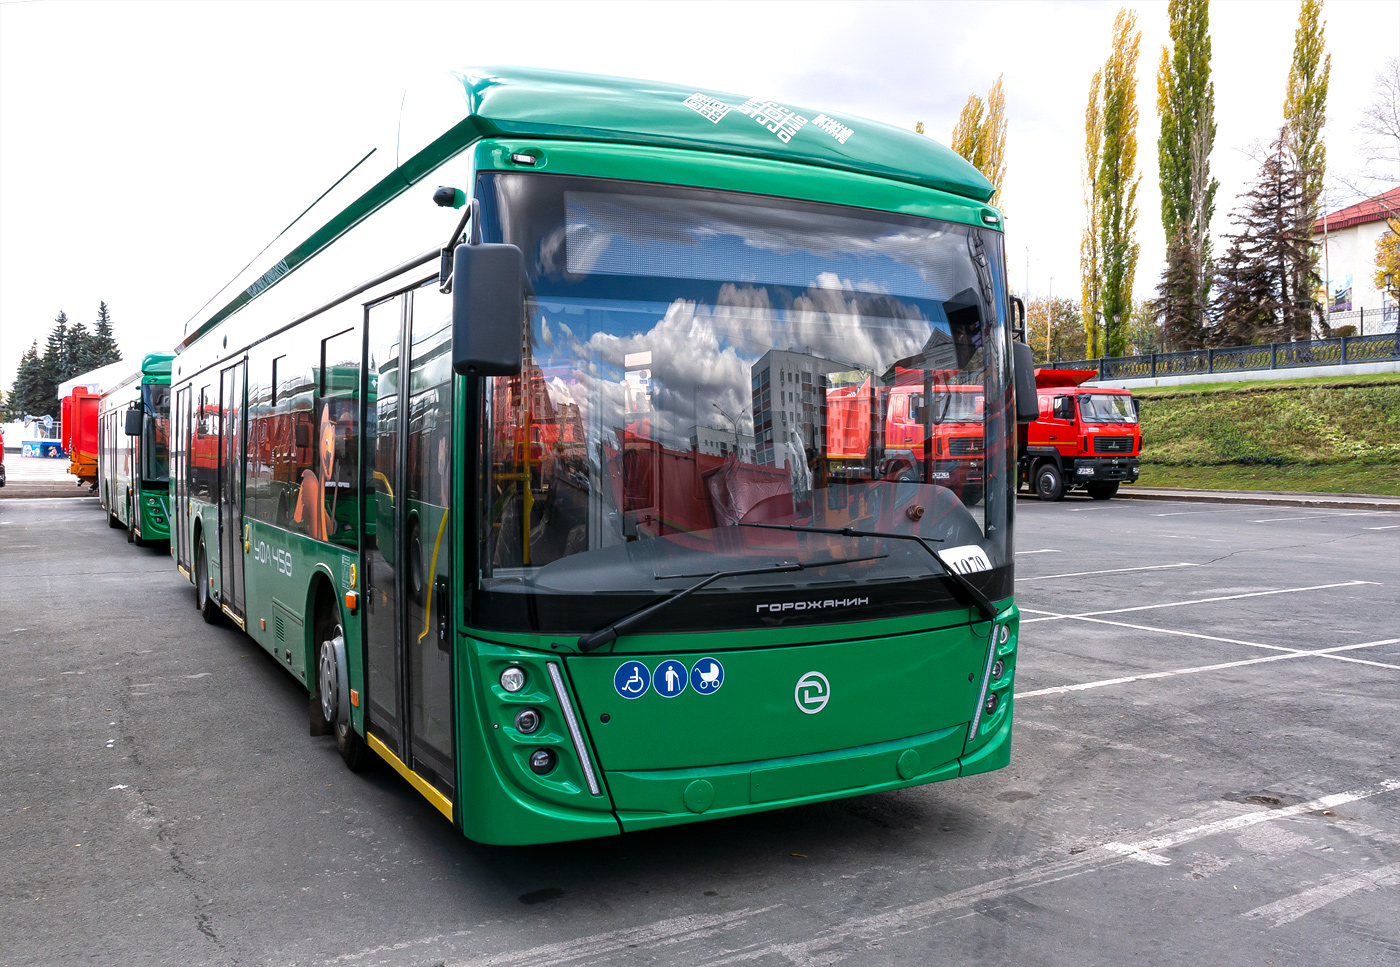 Ufa, UTTZ-6241.01 “Gorozhanin” č. 1070; Ufa — New BTZ trolleybuses